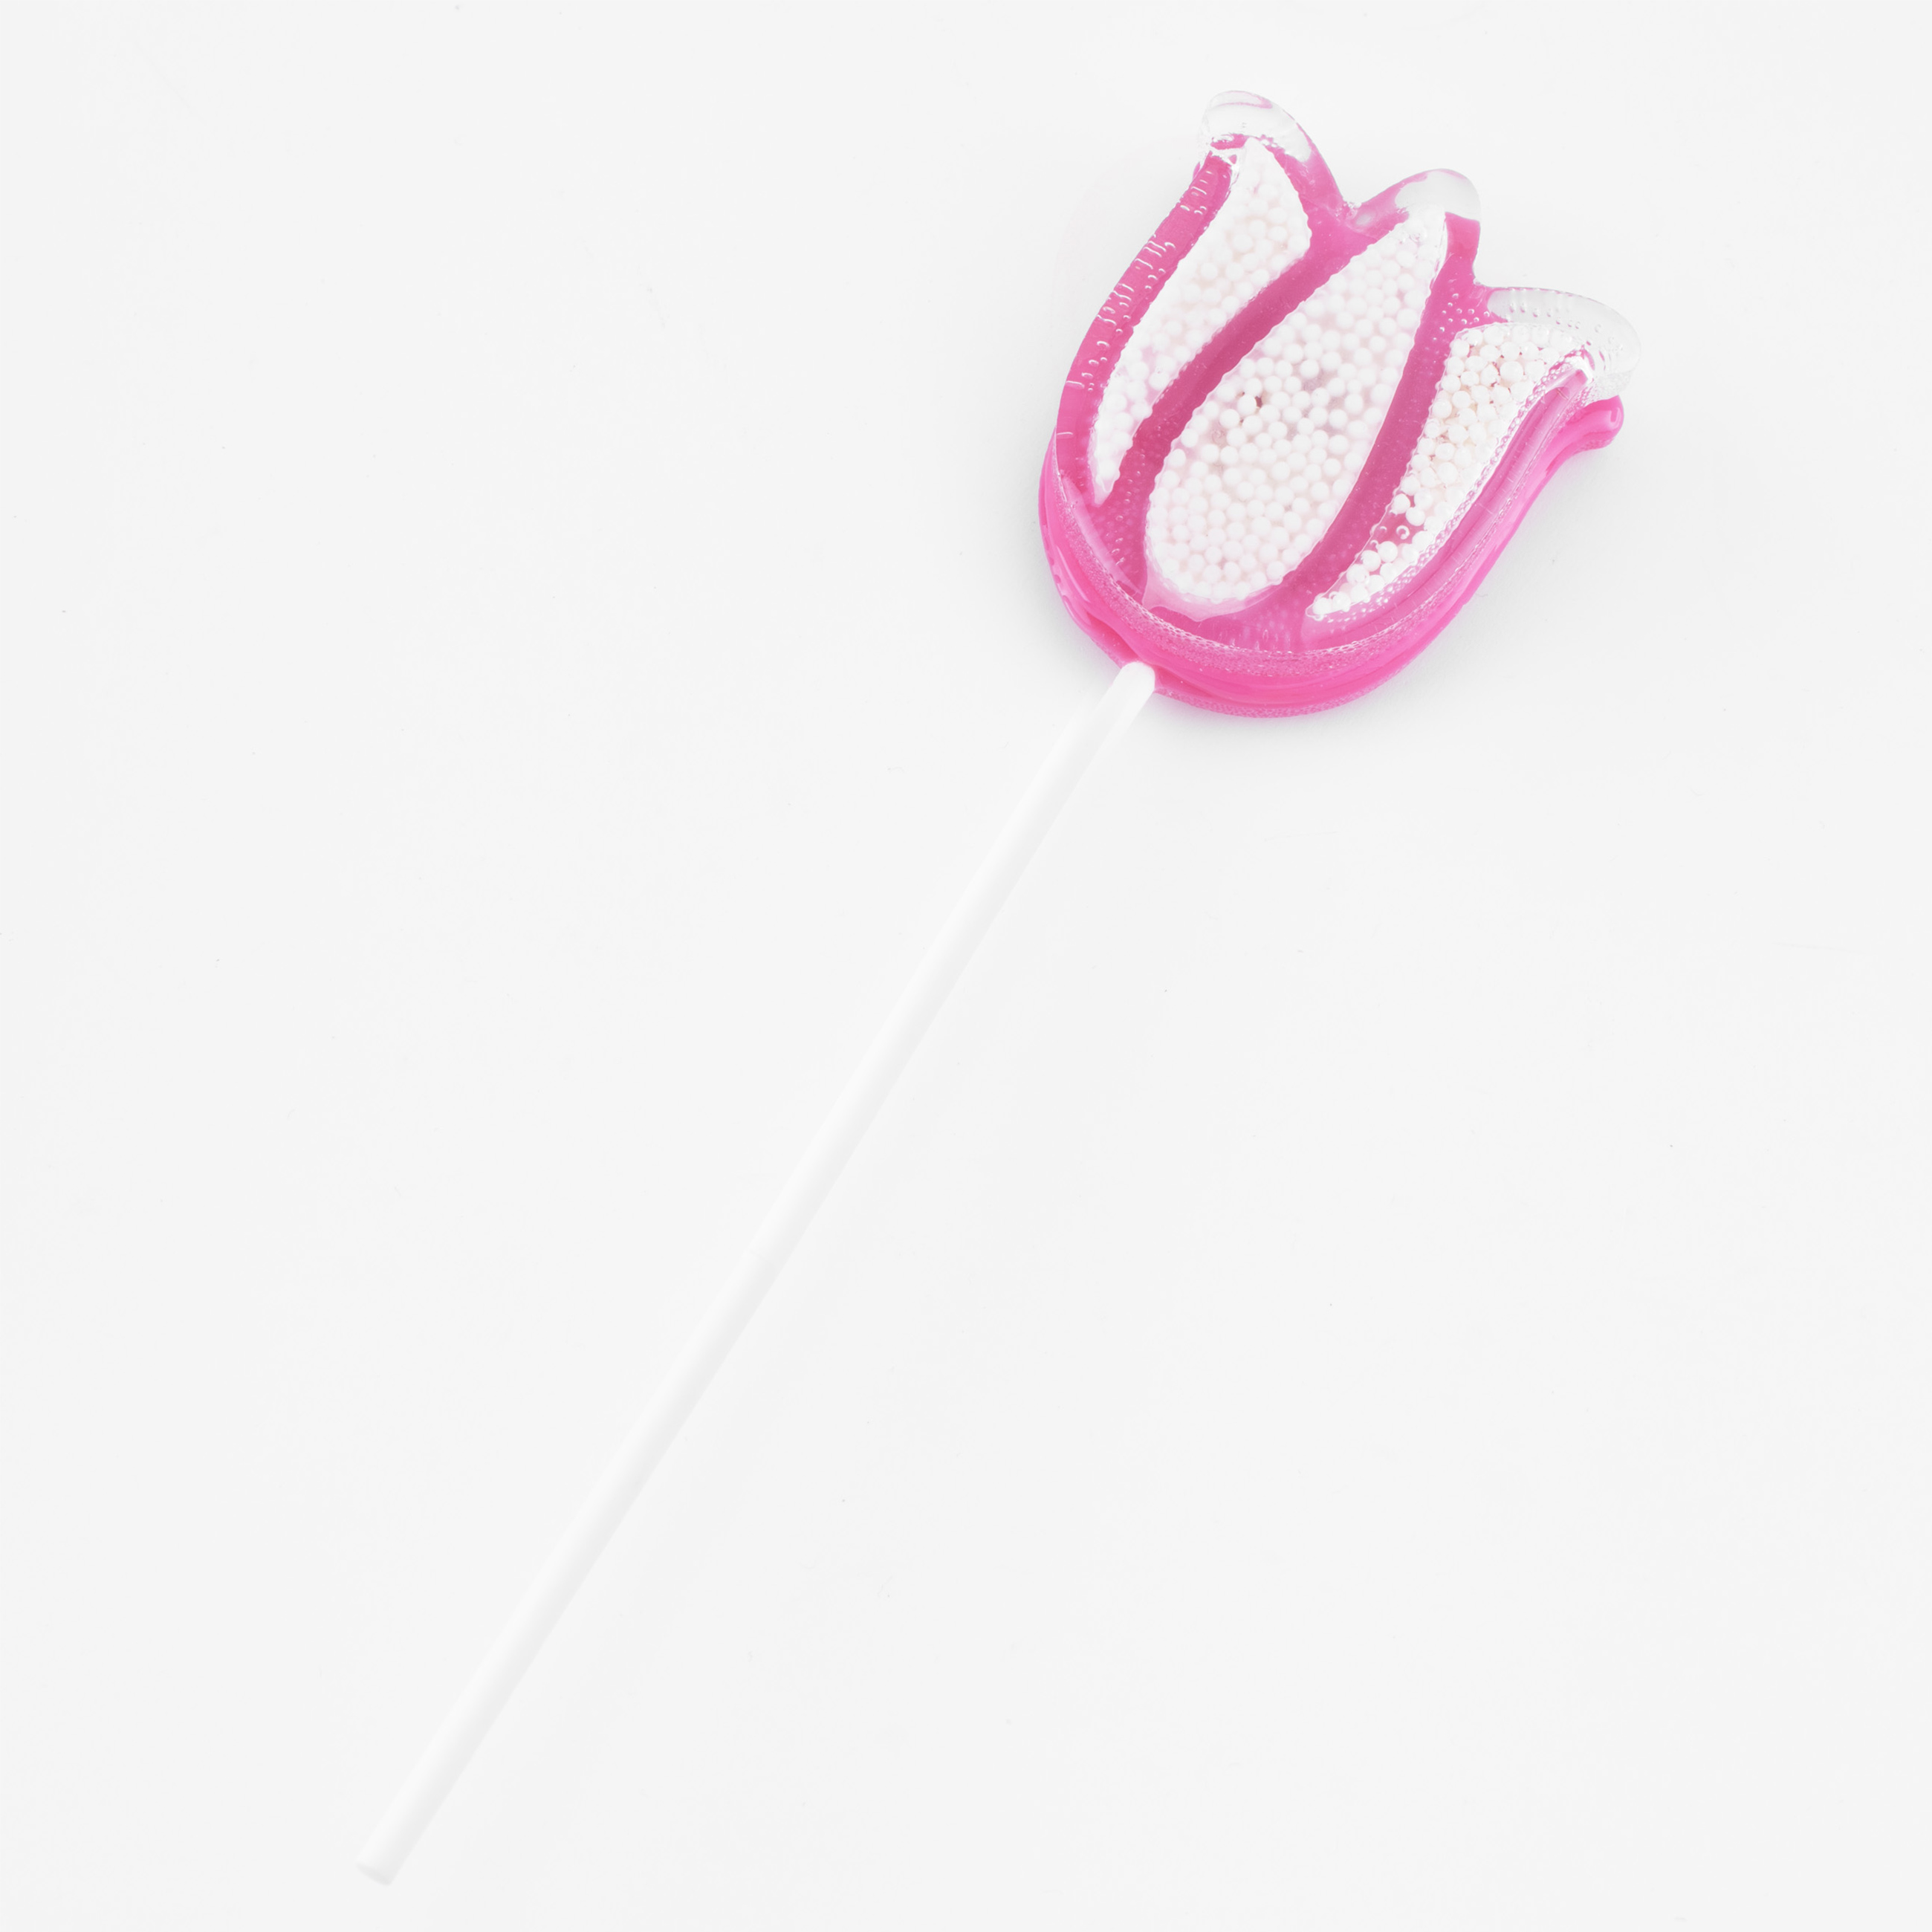 Леденец, 30 гр, погремушка, на палочке, изомальт, розовый, Тюльпан, Sweet life изображение № 2